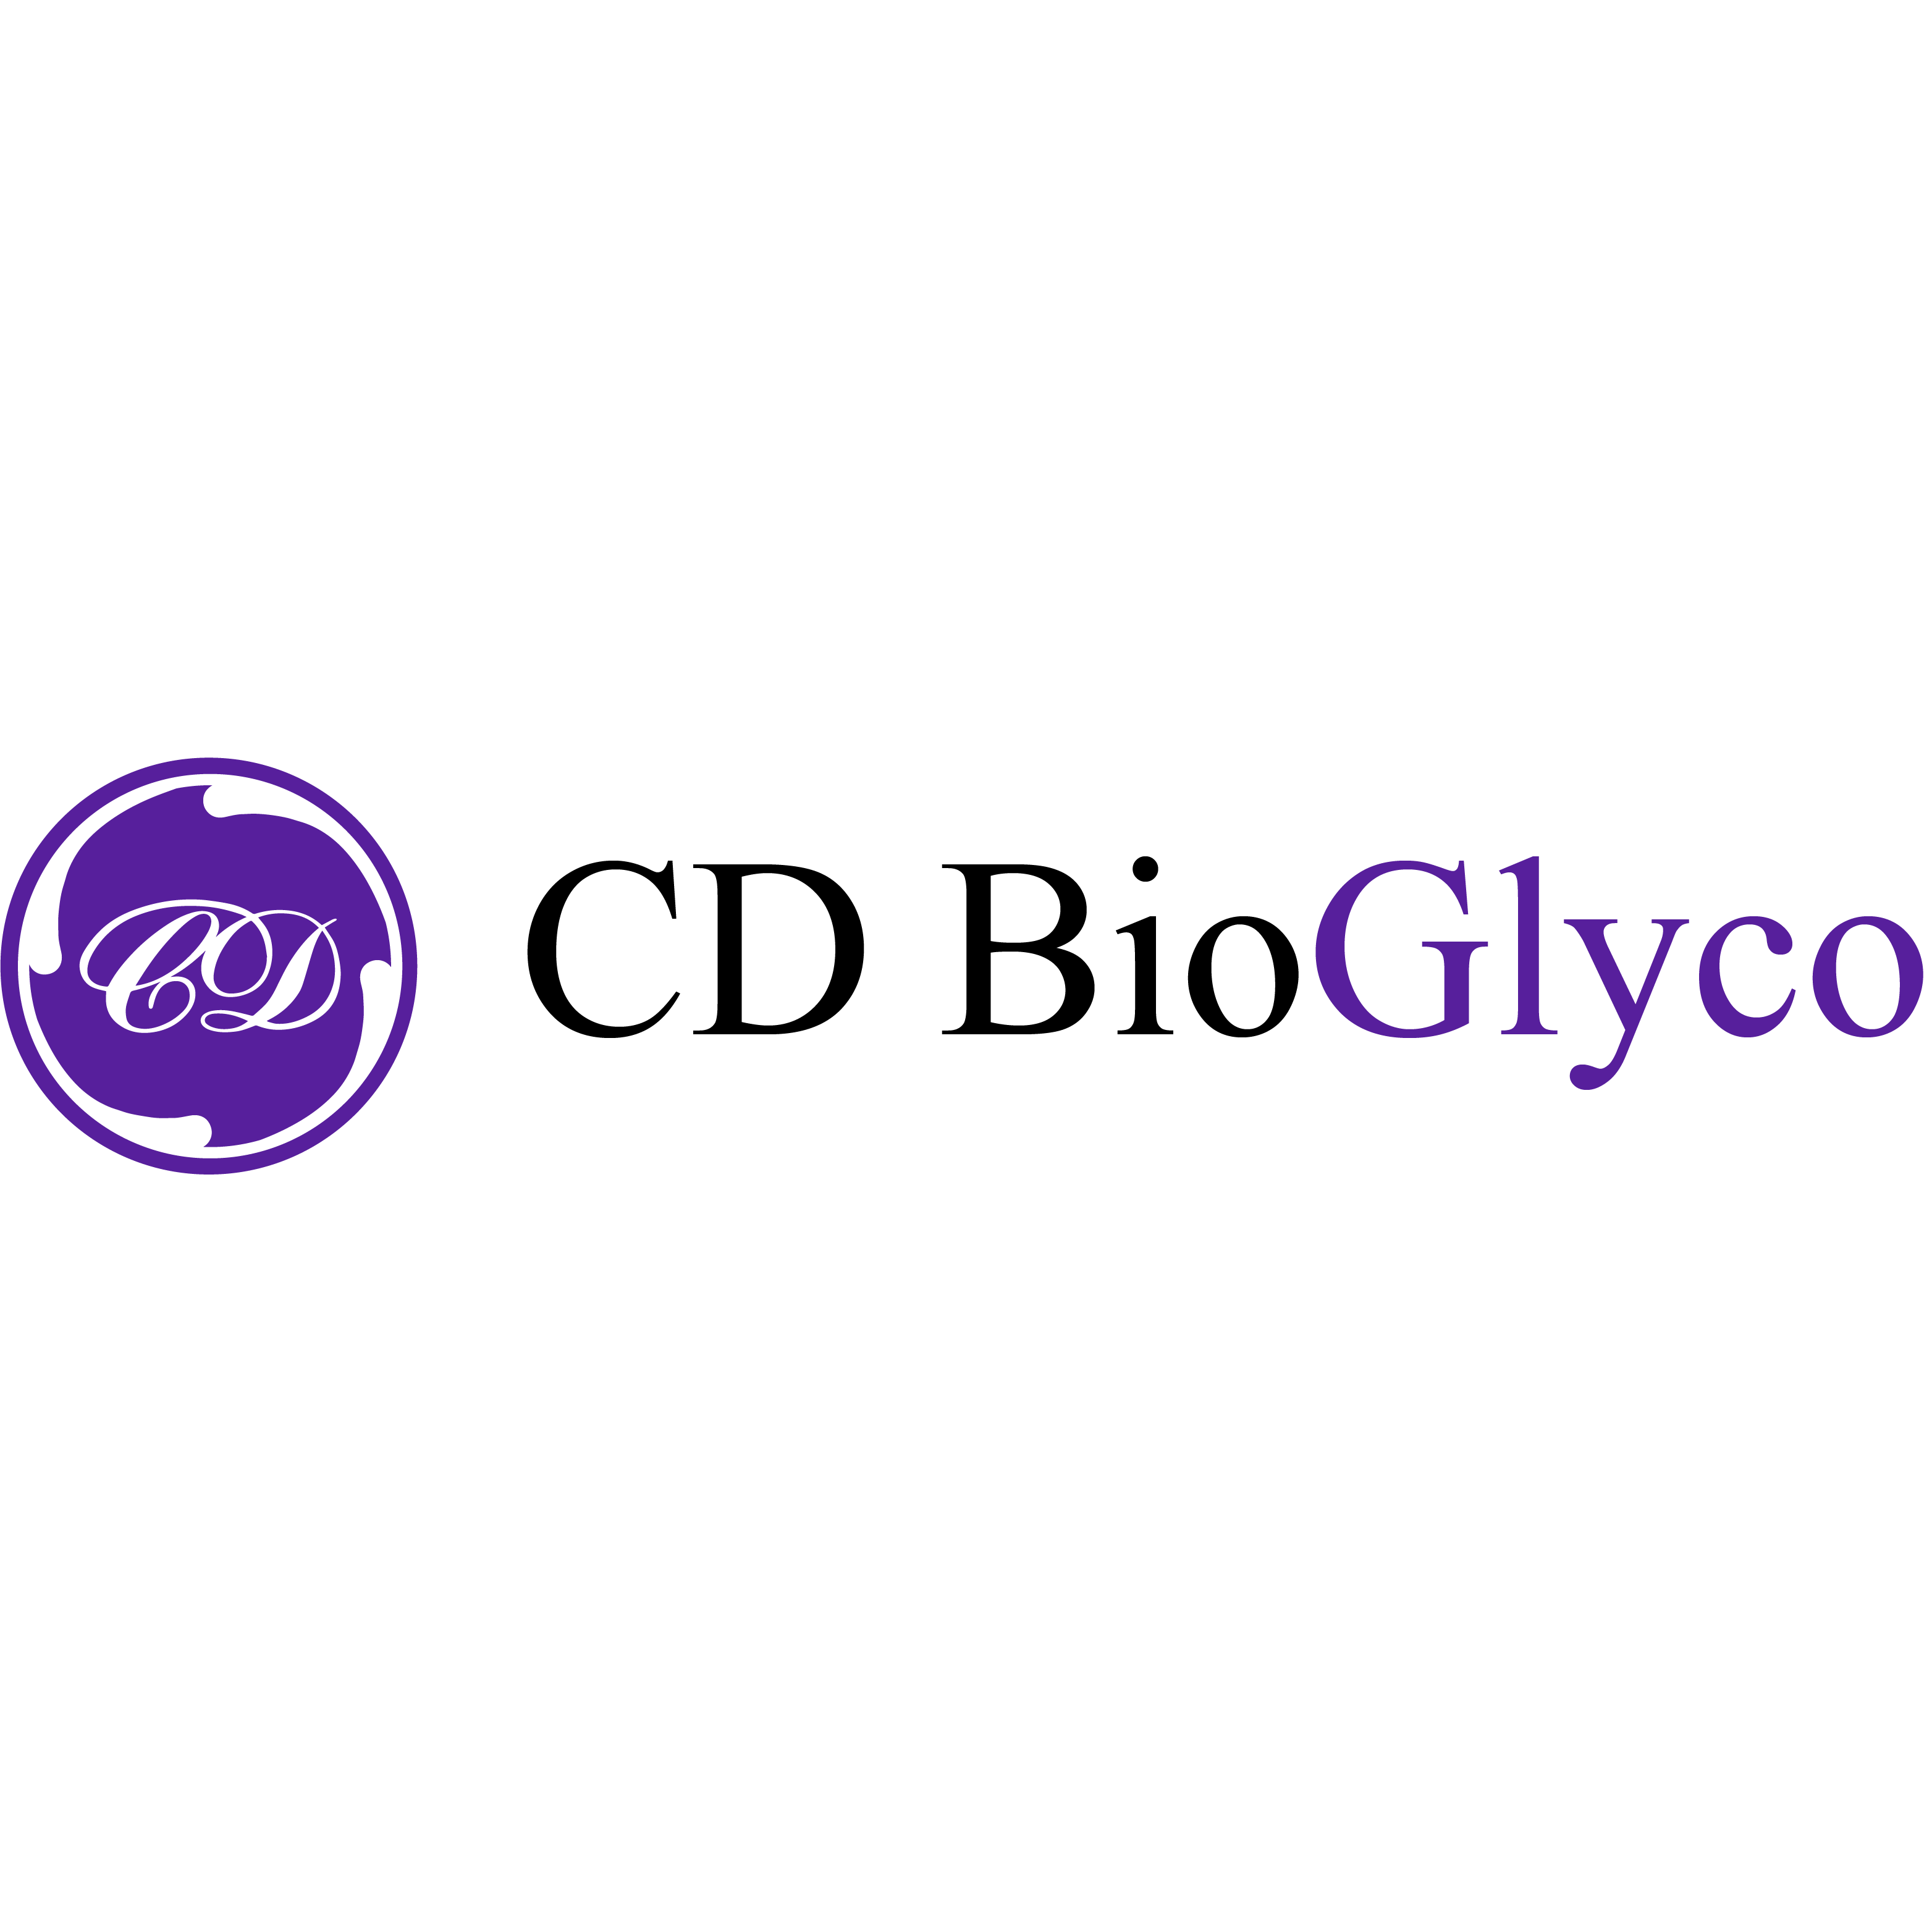 CD BioGlyco Established a Multi-omics Platform for Cancer Glucose Metabolism Research